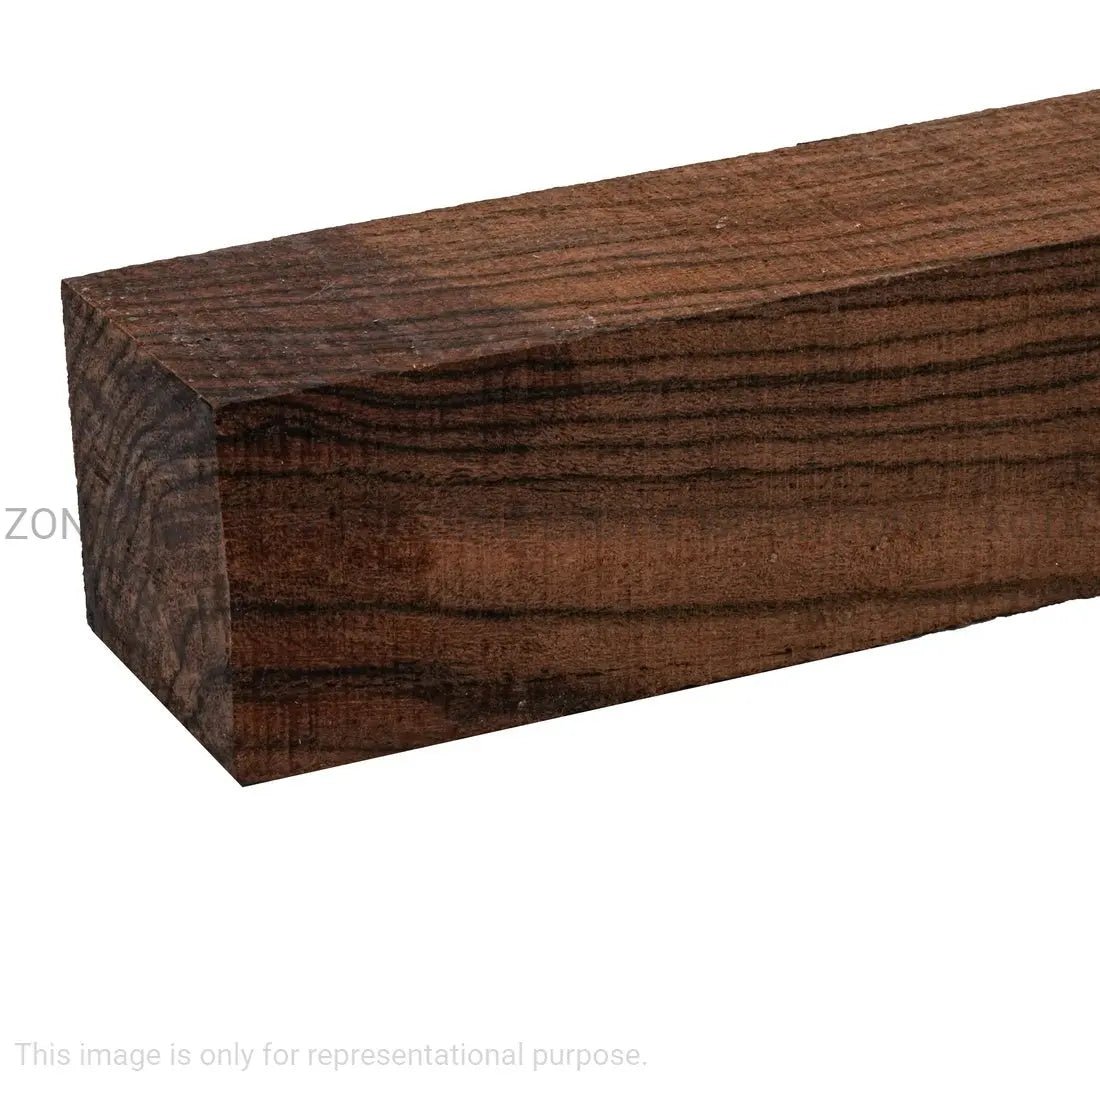 Bocote Turning Blanks - Exotic Wood Zone - Buy online Across USA 